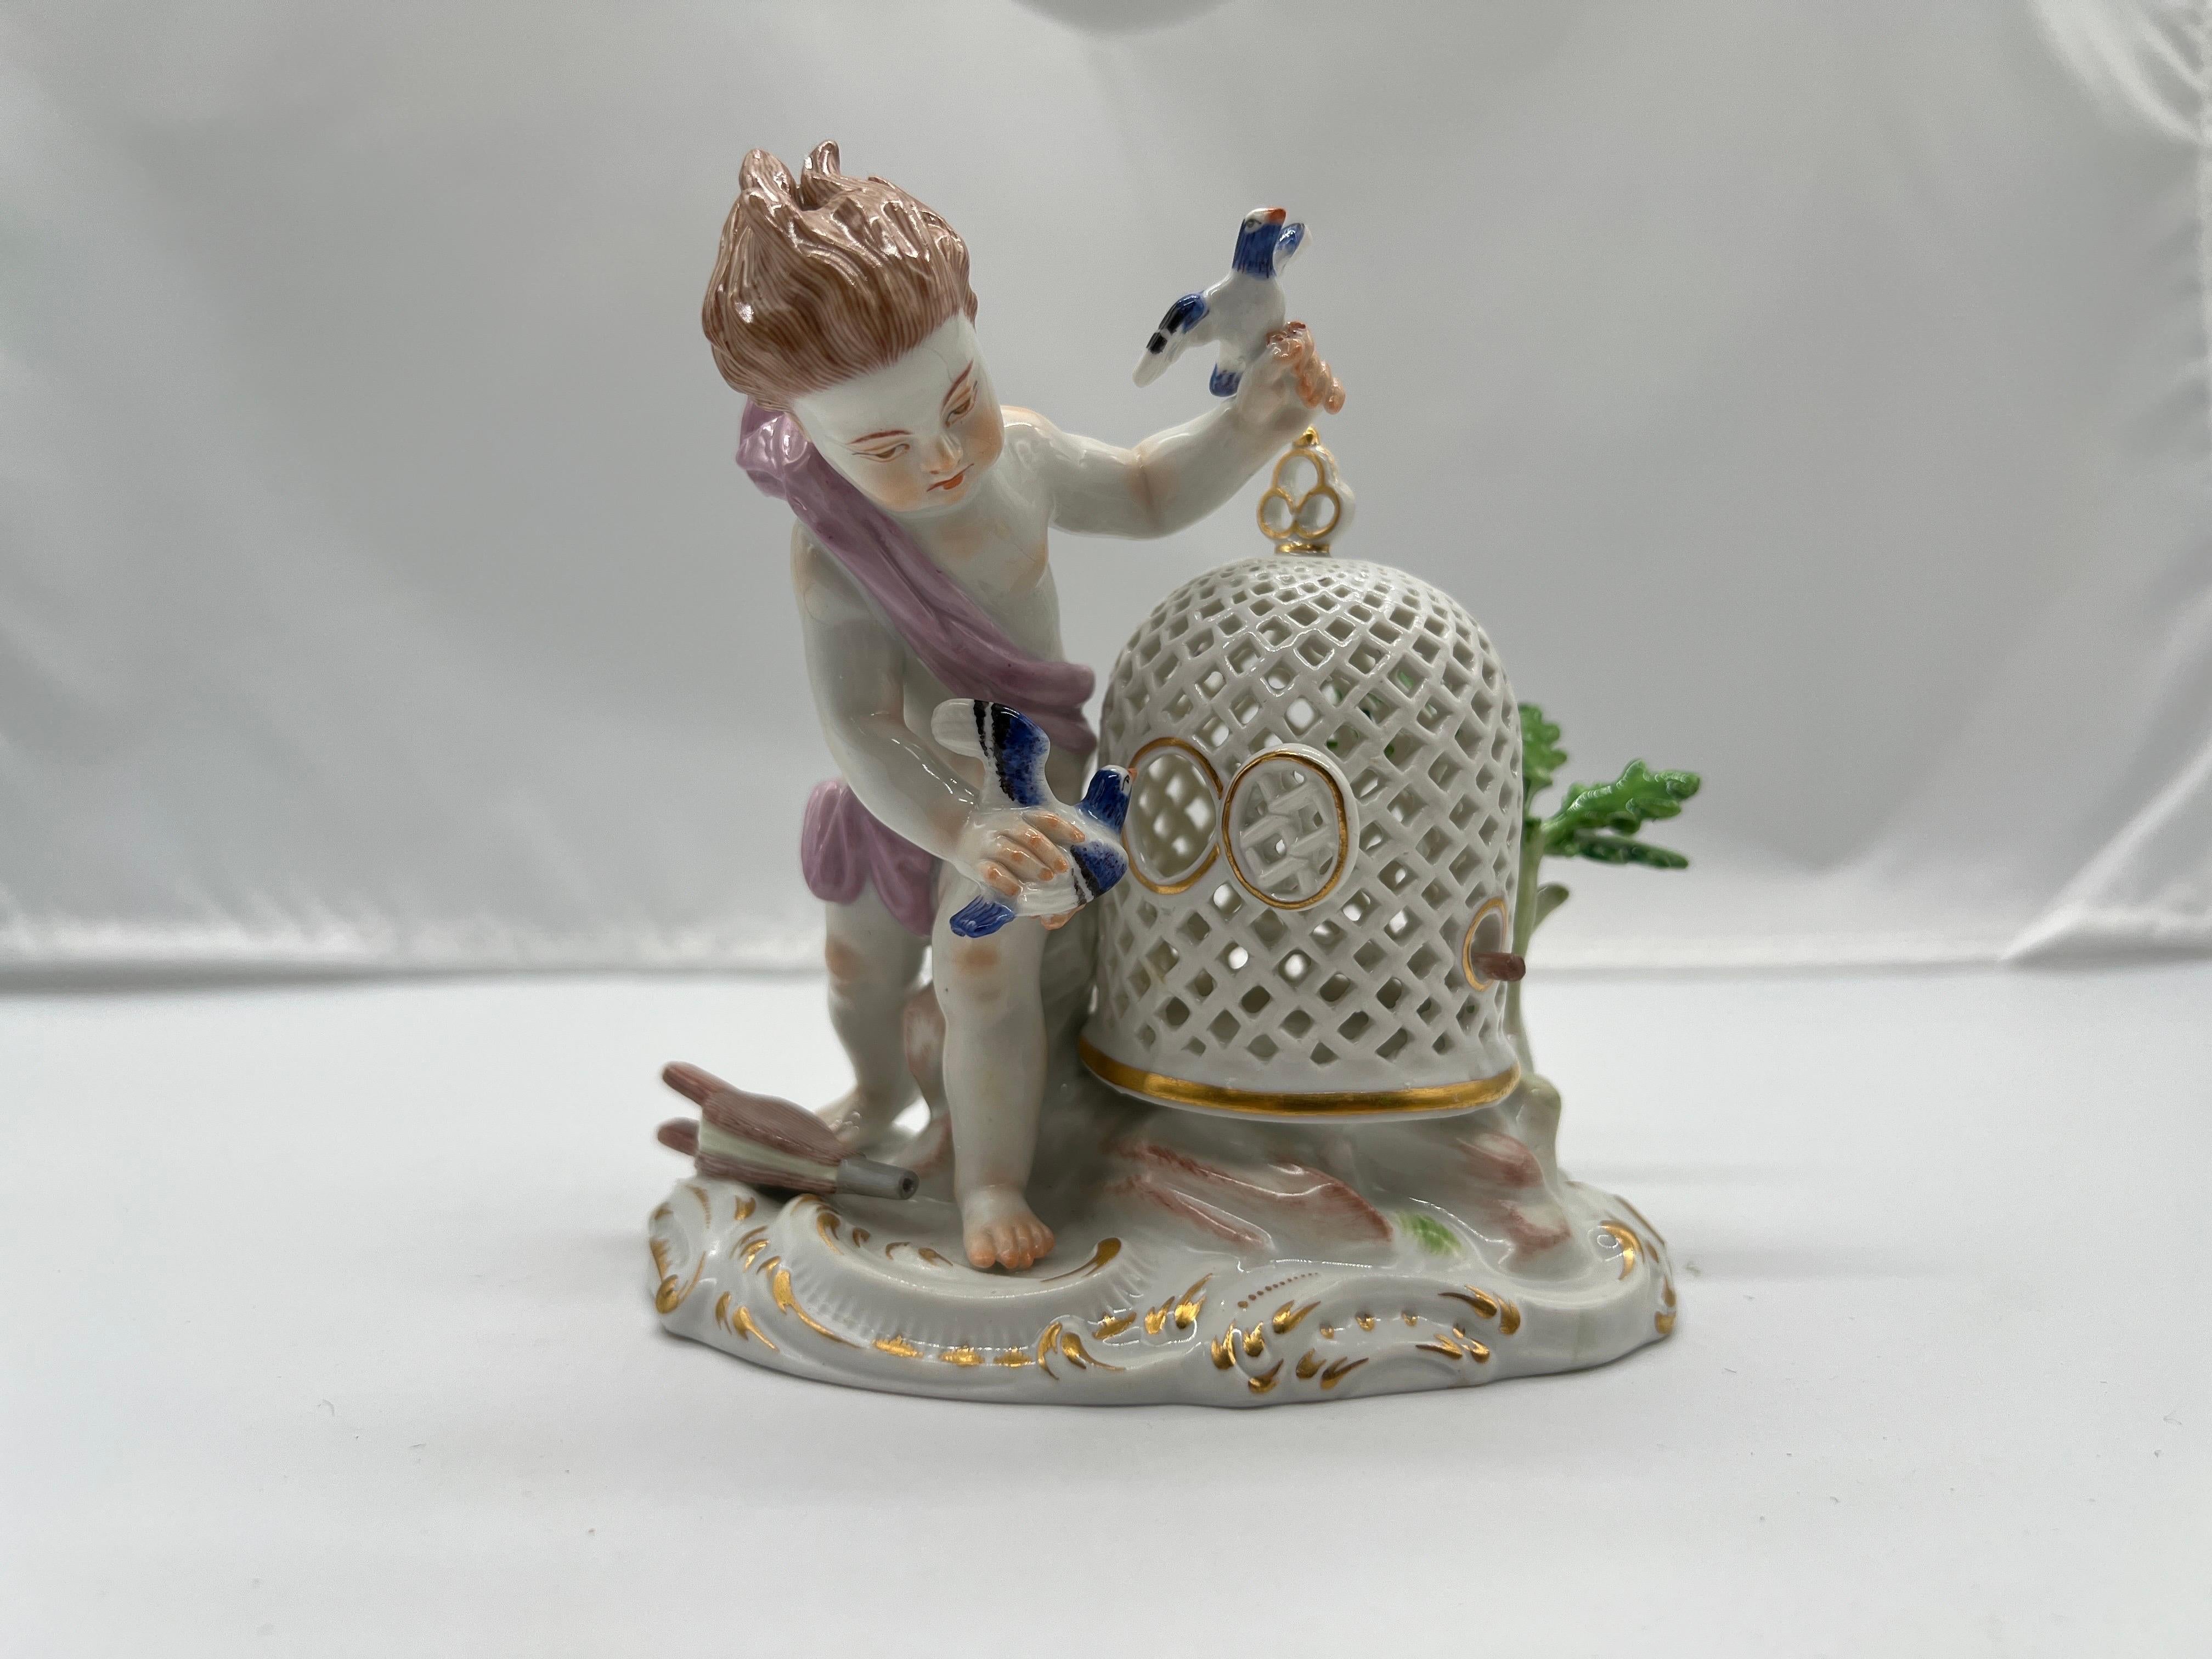 Meissen, 19e siècle.

Figurine en porcelaine de Meissen de belle qualité représentant un jeune garçon jouant avec son oiseau de compagnie. Le personnage se tient à côté d'une cage à oiseaux en porcelaine percée et ornée de feuillages. Marqué sur la